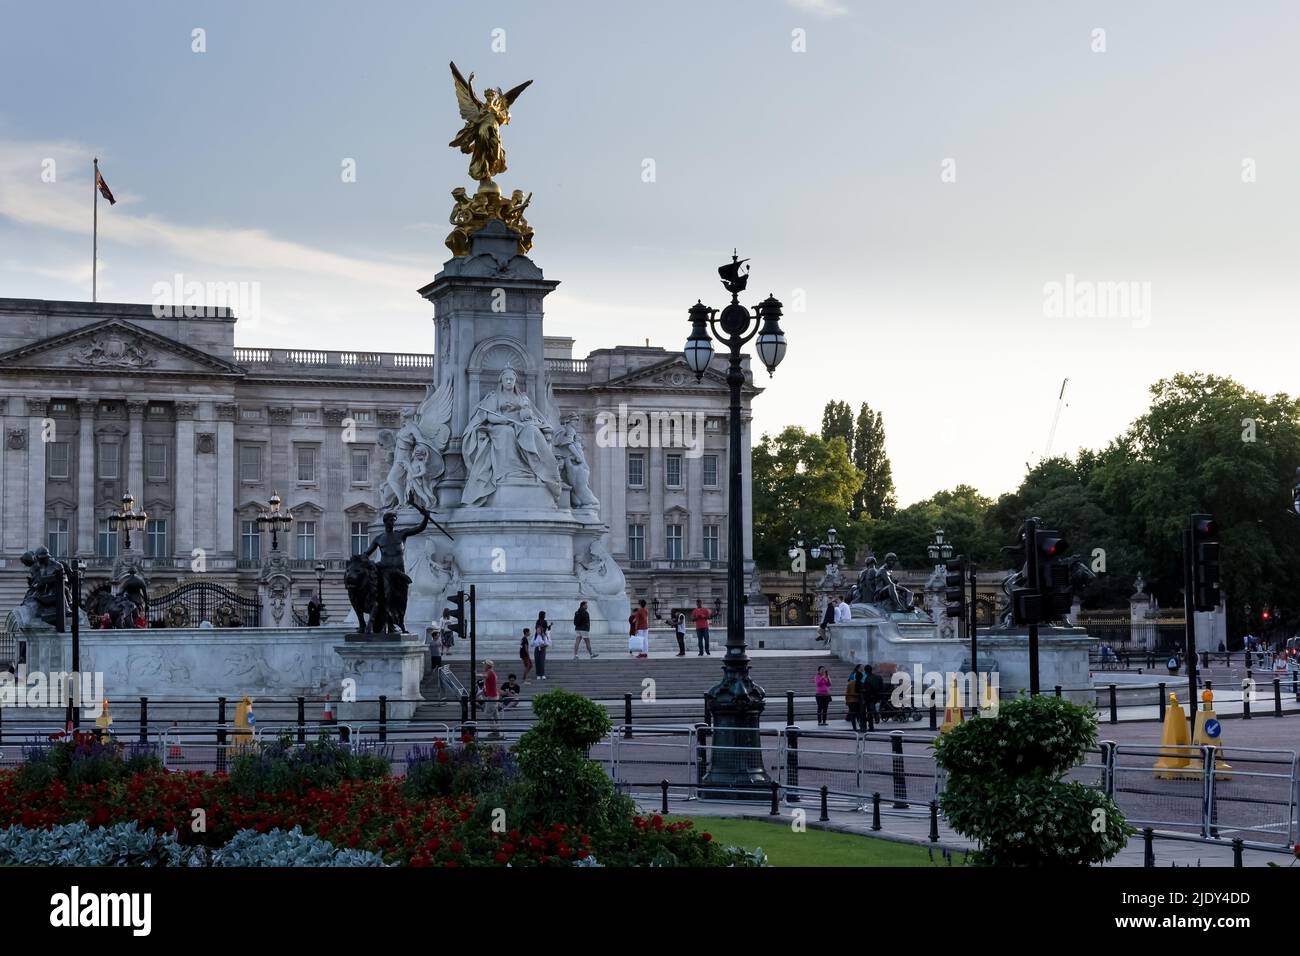 Dettaglio architettonico del Victoria Memorial, monumento alla Regina Vittoria, situato alla fine del Mall. Sullo sfondo, Buckingham Palace Foto Stock